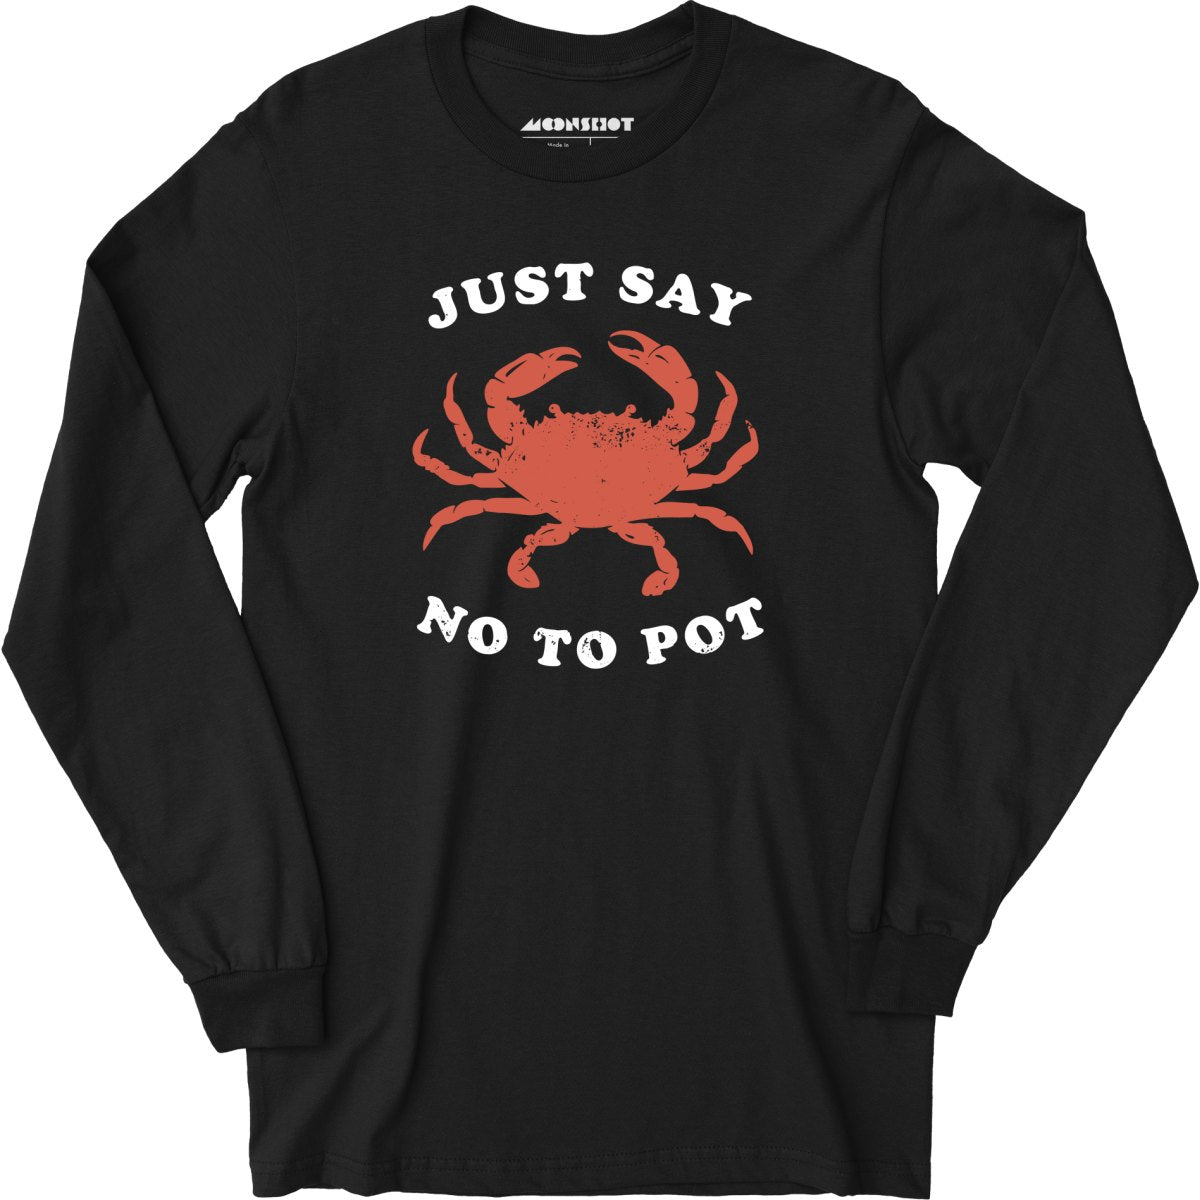 Just Say No To Pot - Long Sleeve T-Shirt